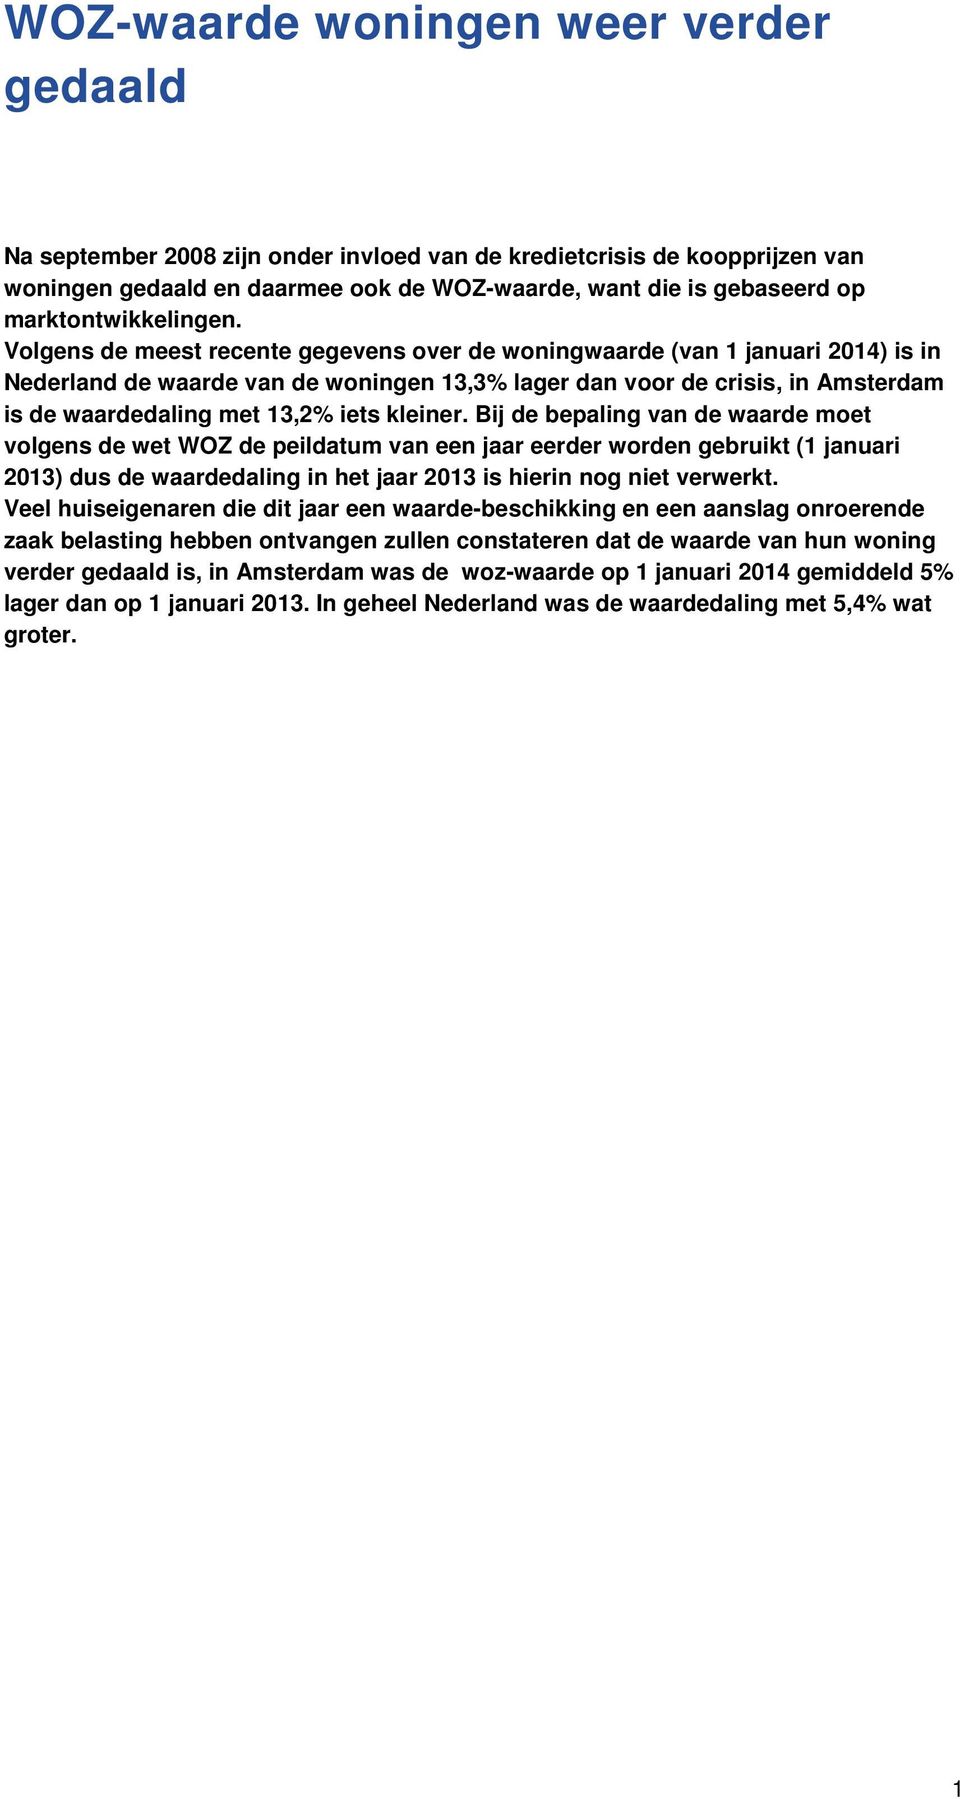 Volgens de meest recente gegevens over de woningwaarde (van 1 januari 2014) is in Nederland de waarde van de woningen 13,3% lager dan voor de crisis, in Amsterdam is de waardedaling met 13,2% iets